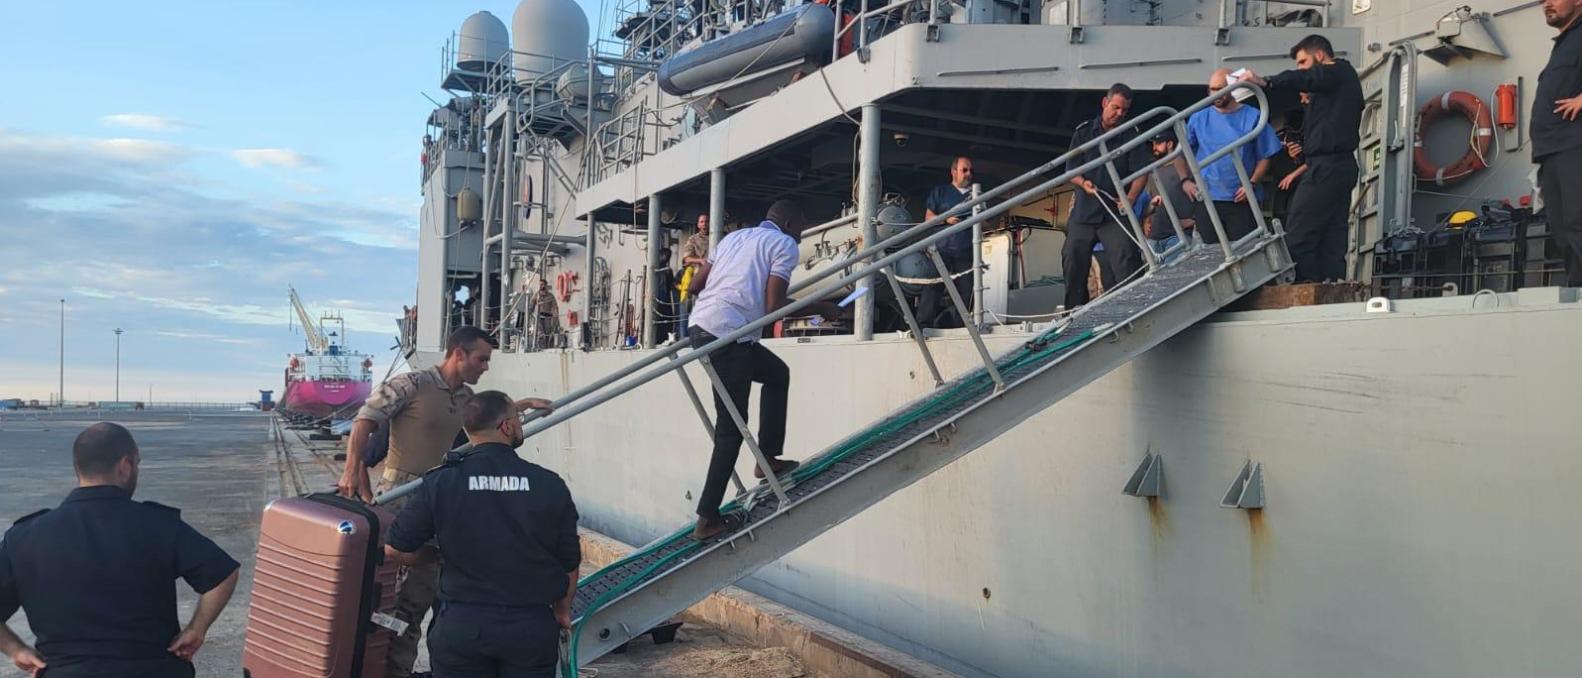 Evacuees boarding ship